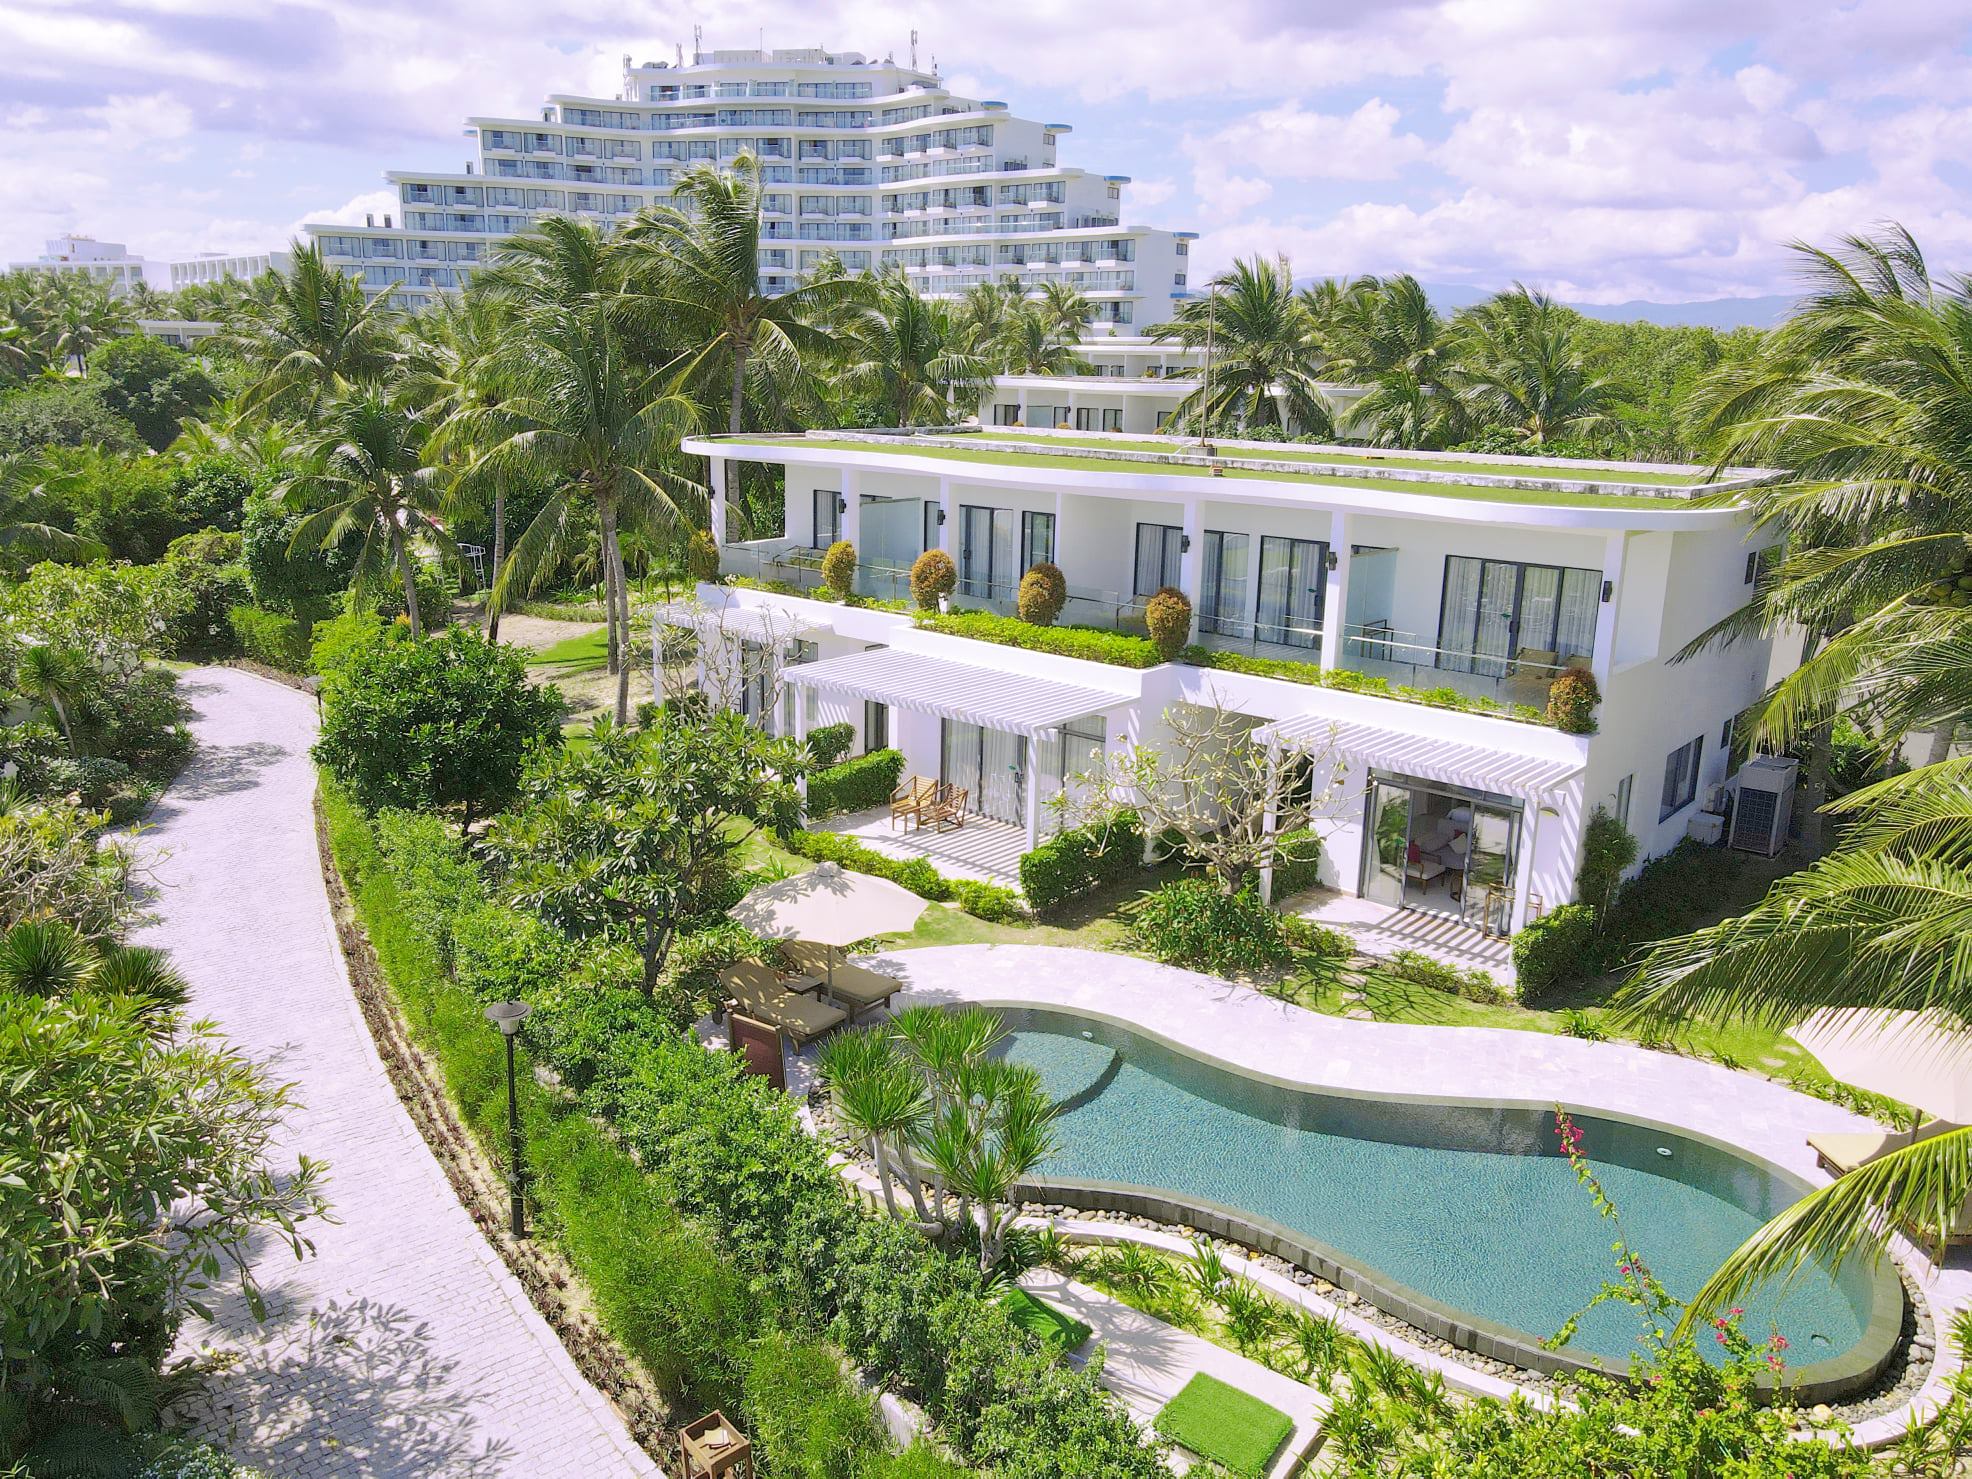 Resort 5 sao Cam Ranh Riviera với không gian xanh, biệt lập cùng hàng loạt tiện ích khép kín là điểm đến an toàn của du khách.